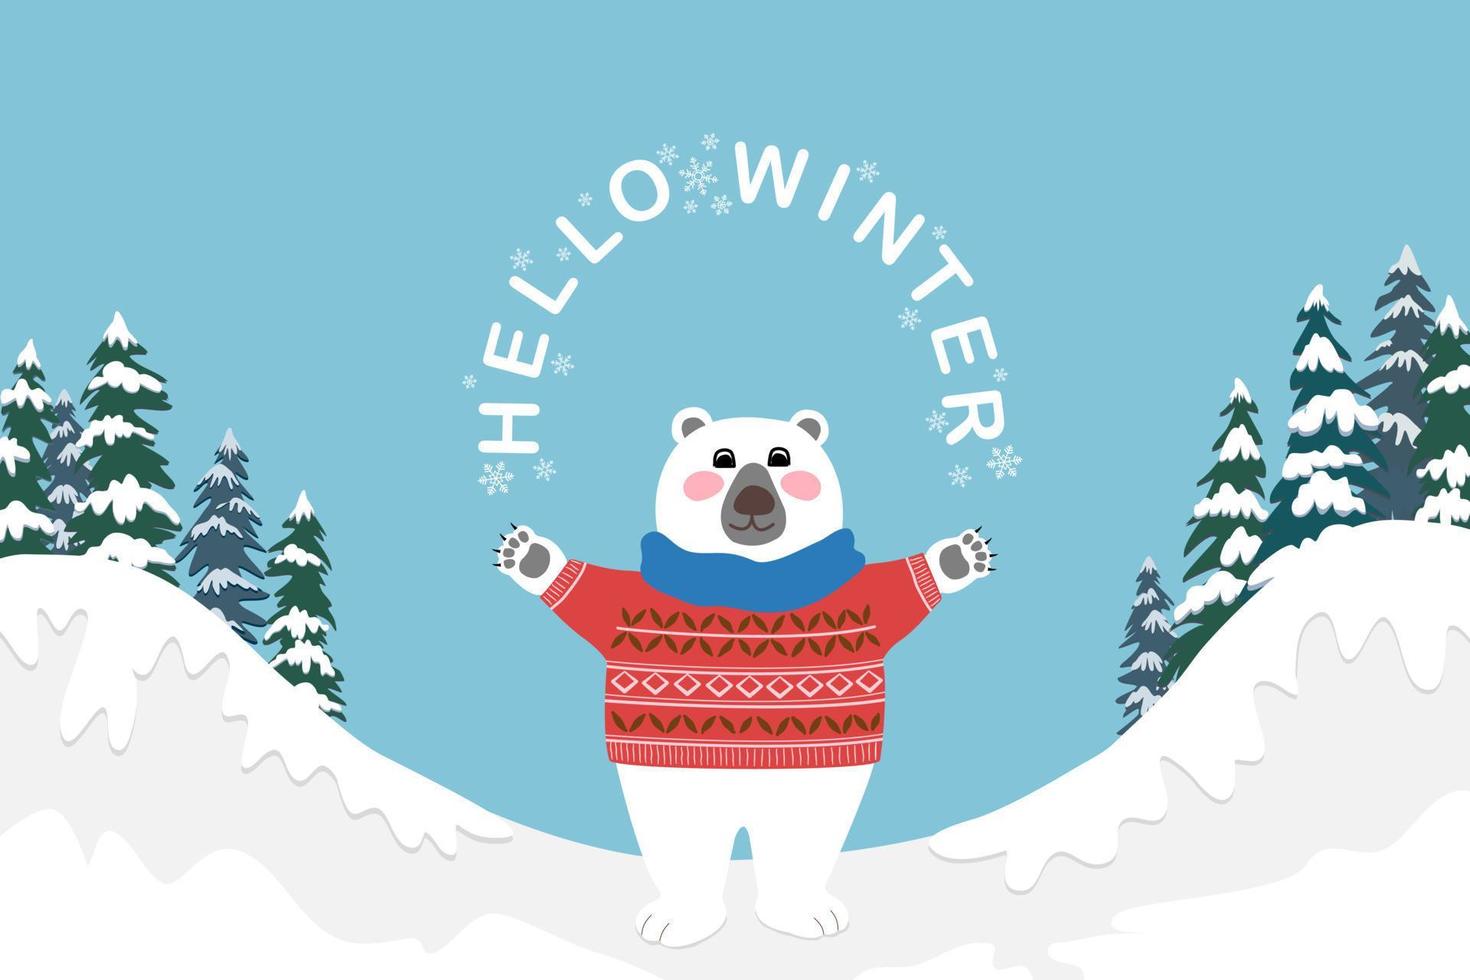 oso polar blanco con suéter rojo y bufanda de pie y manos arriba con textos hola invierno, montaña, pinos, nieve y cielo azul en el fondo, dibujo de caricatura vectorial vector